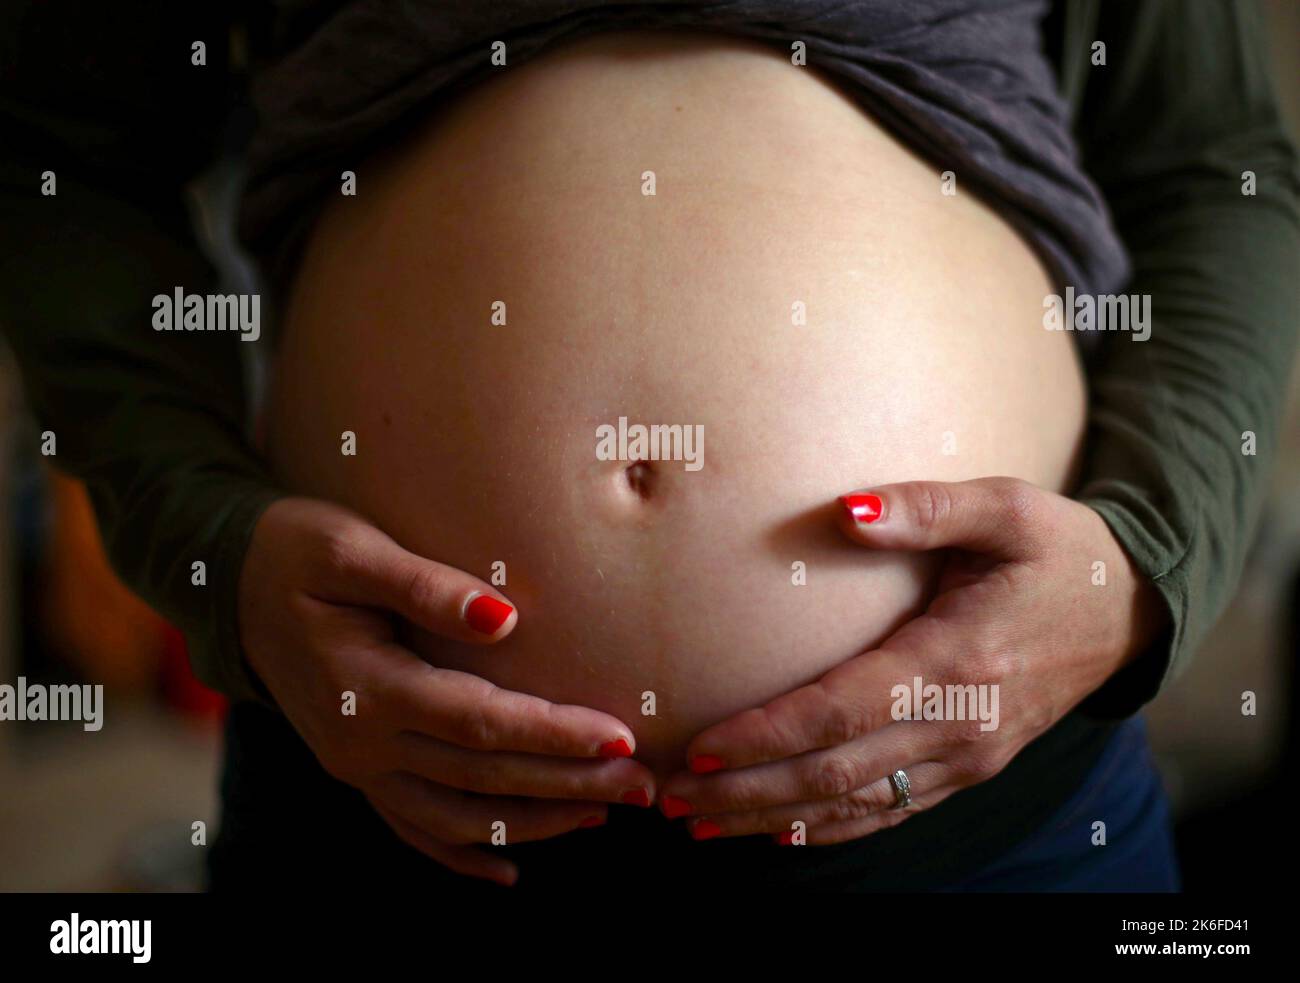 Aktenfoto vom 25/05/18 einer Schwangeren, die ihren Magen hält, Laut Forschern ist die Zahl der Babys, die im Januar 2021 geboren wurden, im Vergleich zu den Lebendgeburten im gleichen Monat in den Vorjahren um 14 % gesunken, da dies wahrscheinlich durch die Befürchtungen einer Gesundheitskrise in Covid-19 während der ersten Welle der Pandemie ausgelöst wurde. Stockfoto